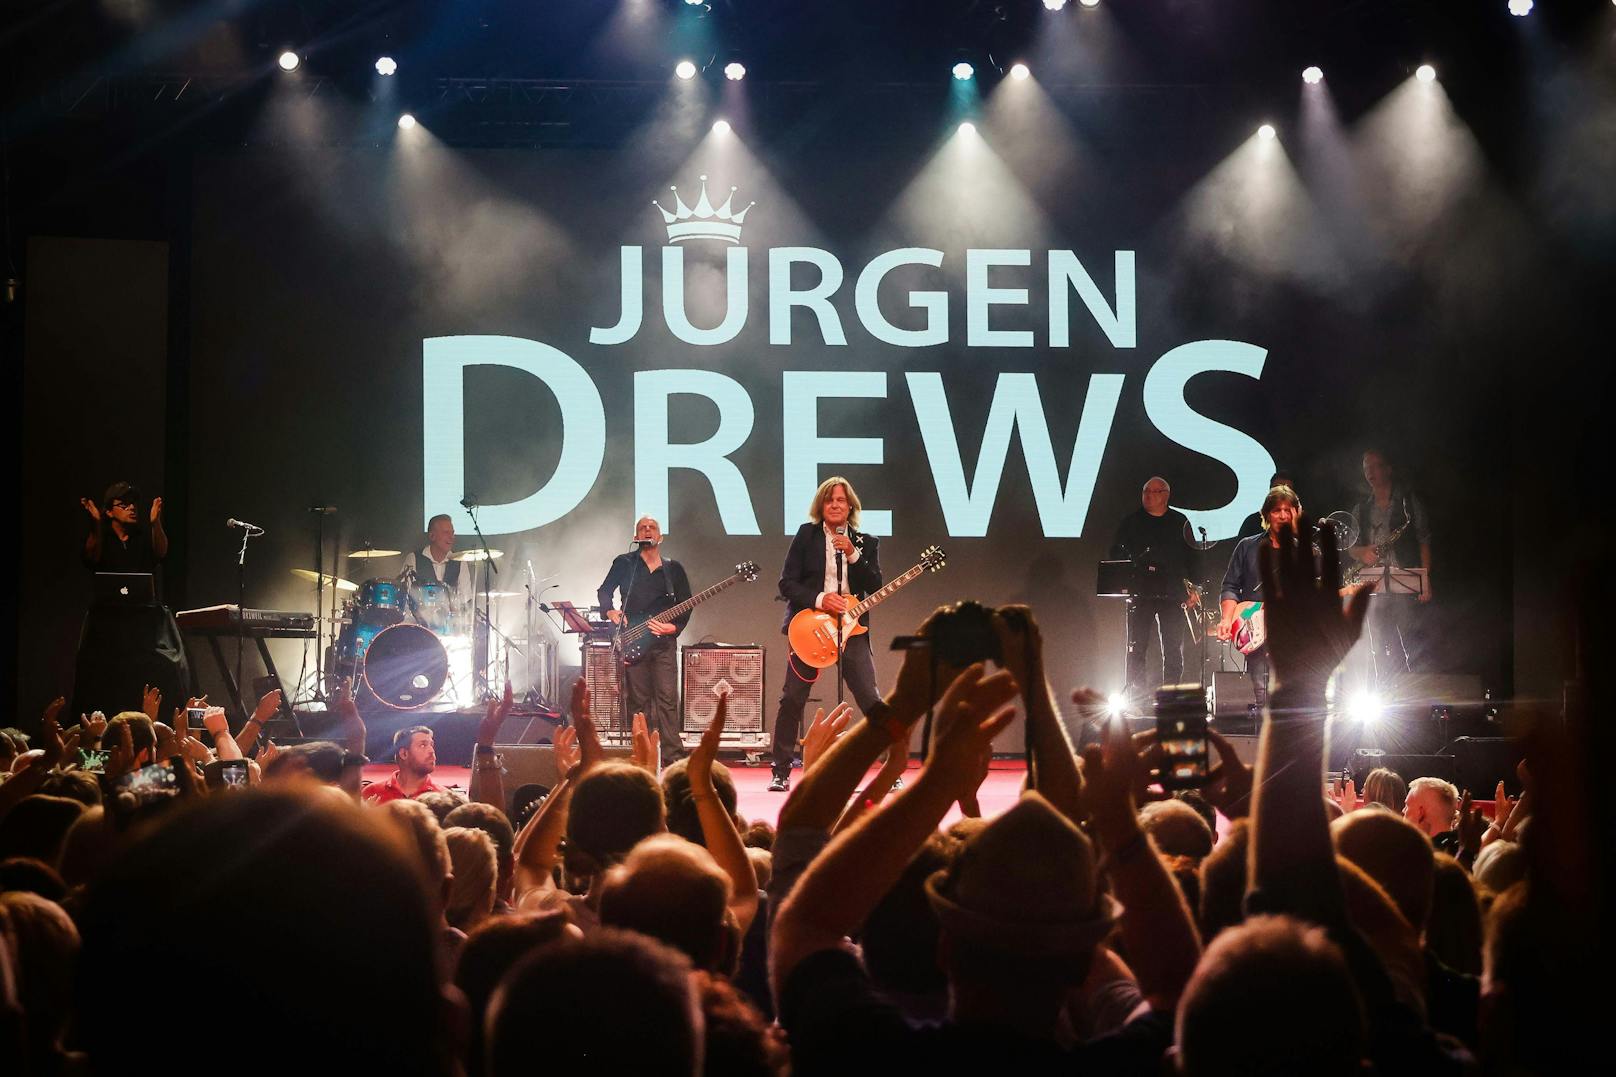 Das Publikum, das zur Mega-Musik-Party aus ganz Europa angereist war, dankte es dem beliebten Künstler und feierte Jürgen und seine Songs.